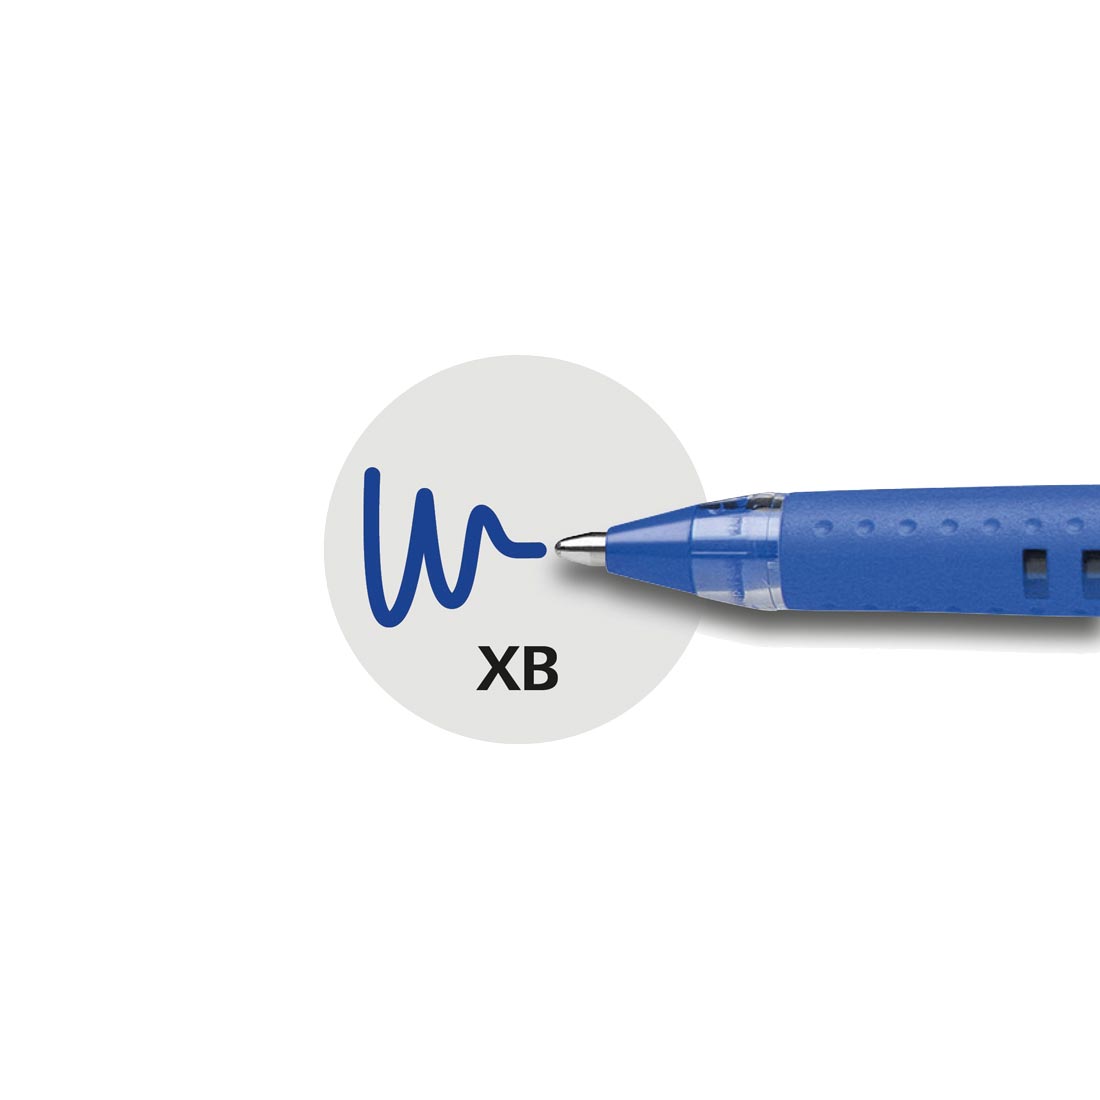 Slider BASIC Ballpoint Pens XB, Box of 10#ink-color_blue